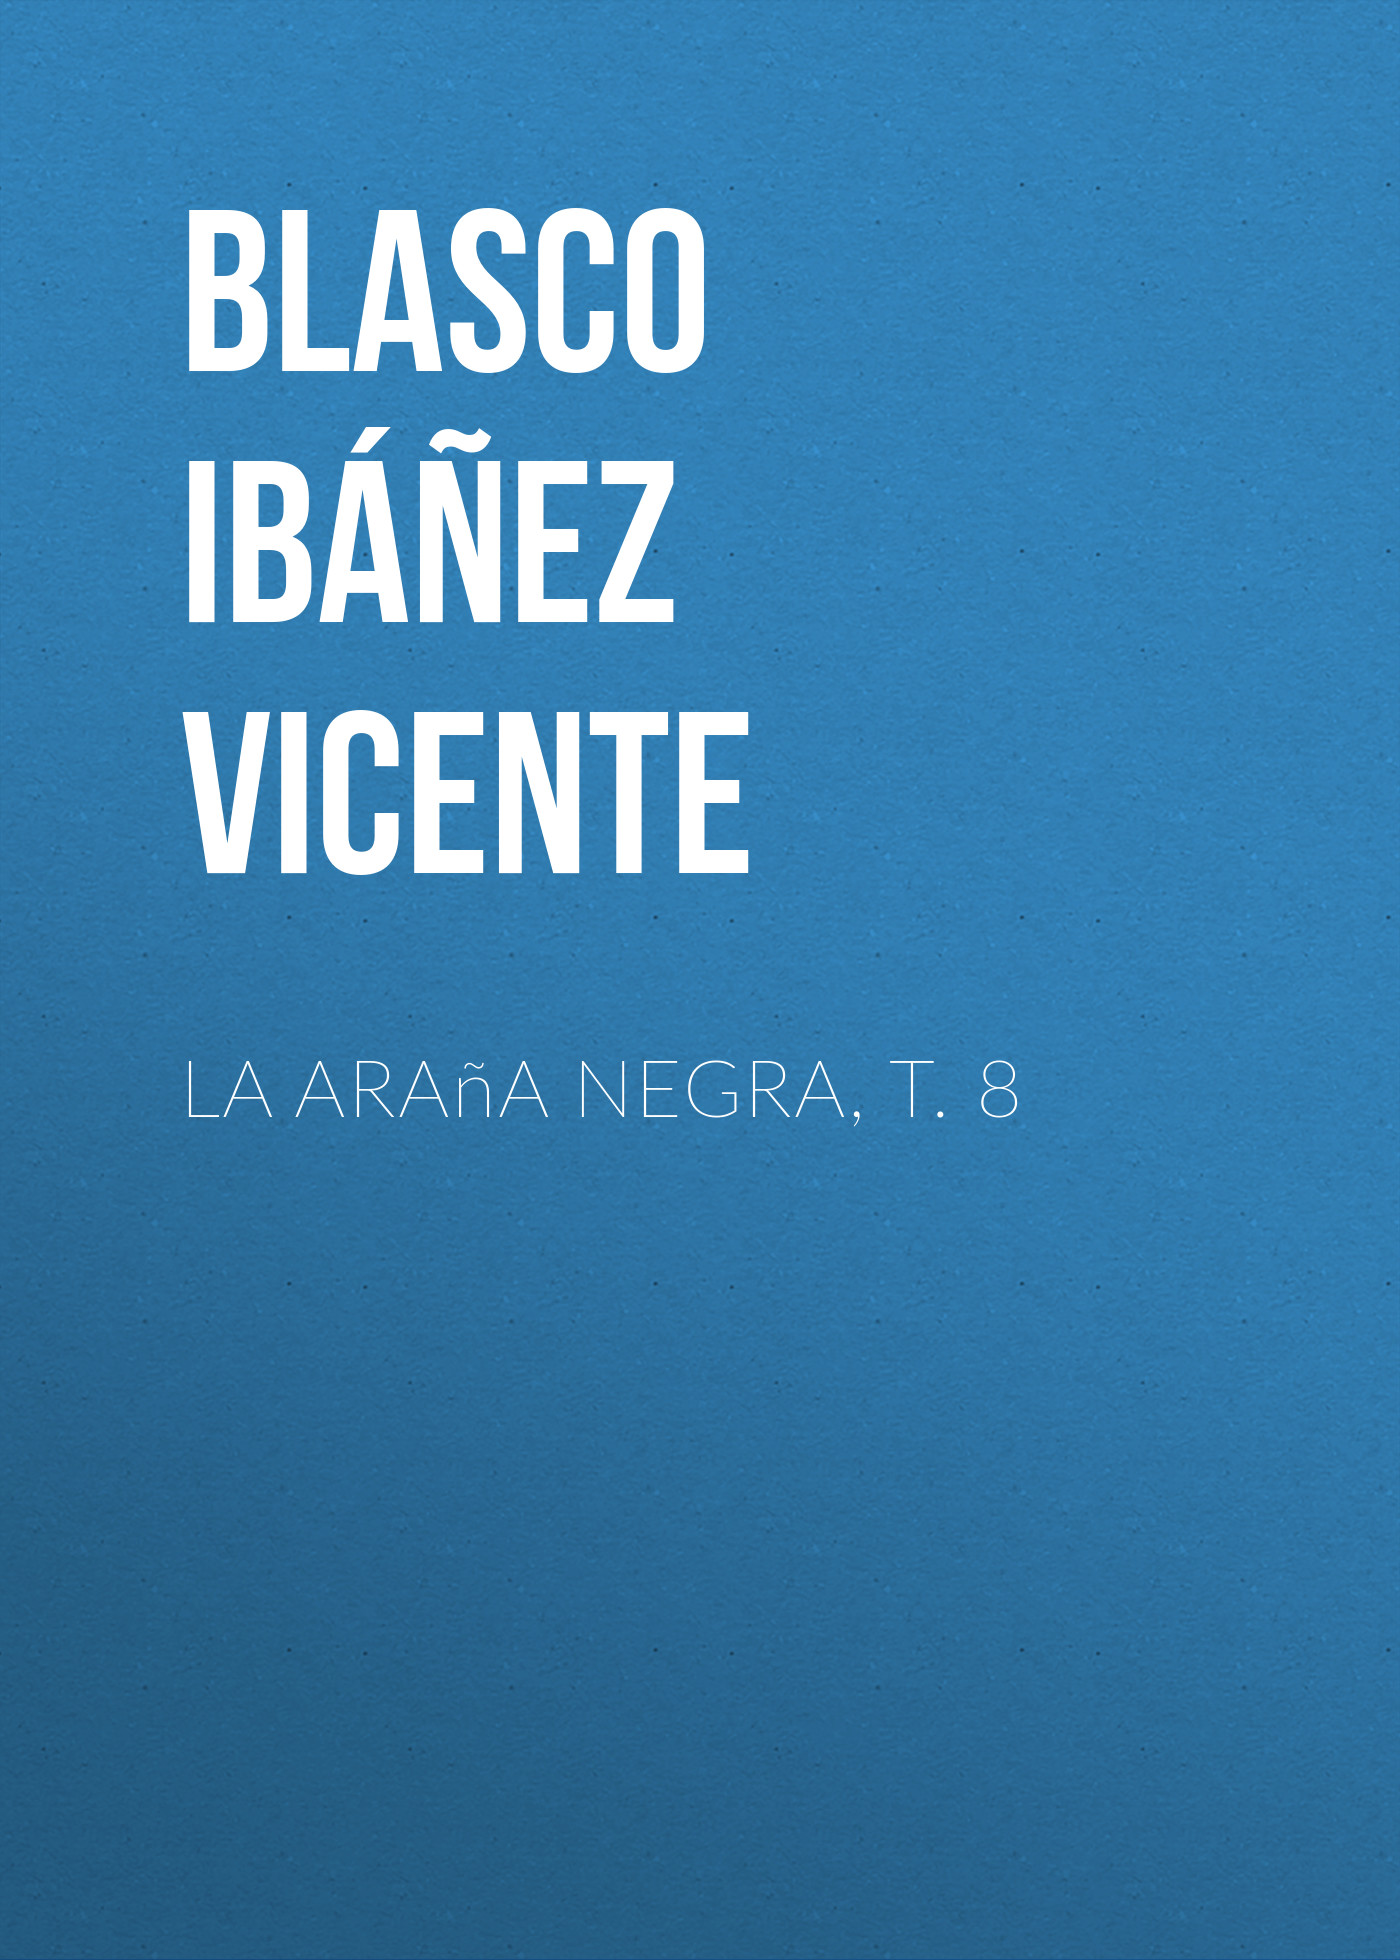 Книга La araña negra, t. 8 из серии , созданная Vicente Blasco Ibáñez, может относится к жанру Зарубежная старинная литература, Зарубежная классика, Иностранные языки. Стоимость электронной книги La araña negra, t. 8 с идентификатором 24178860 составляет 0 руб.